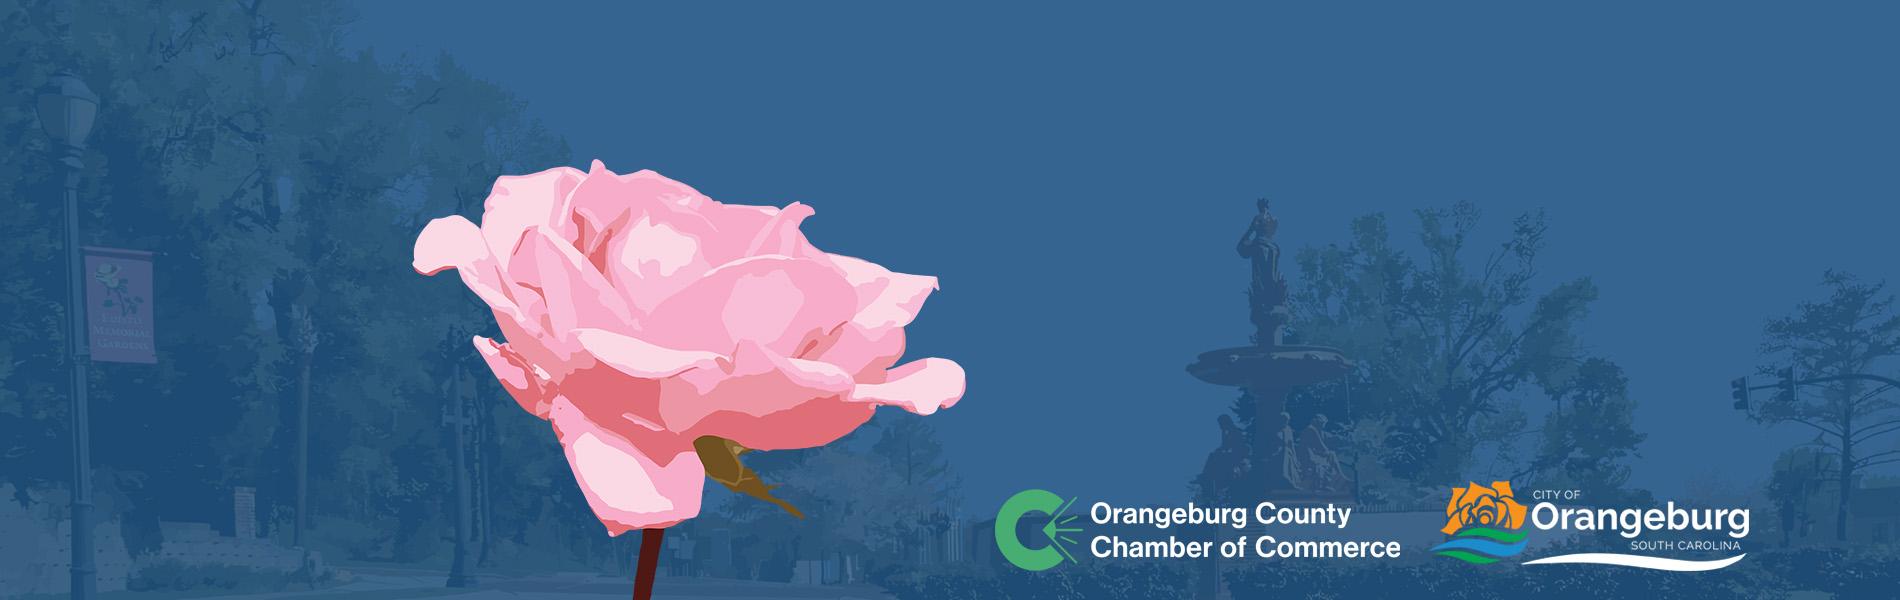 Orangeburg Festival of Roses